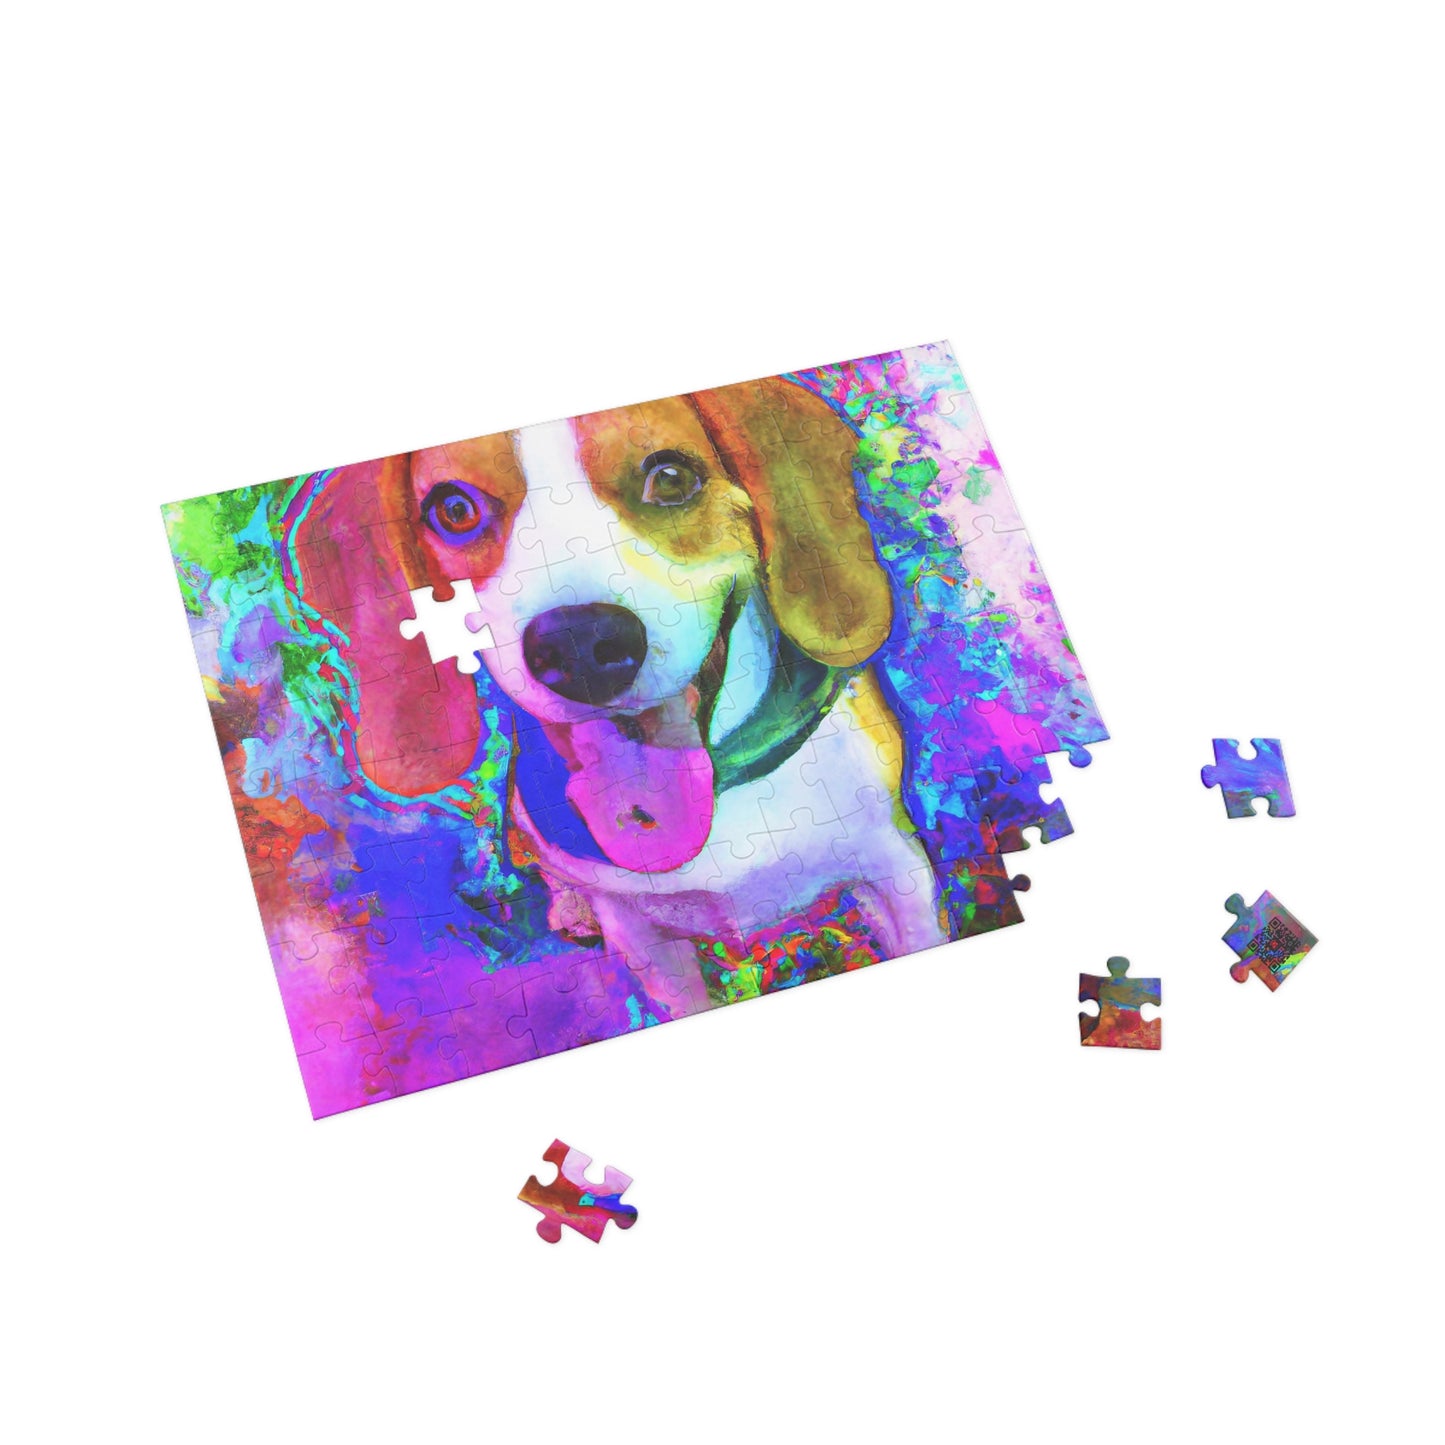 Regalius de Greylock - Beagle Puppy - Puzzle